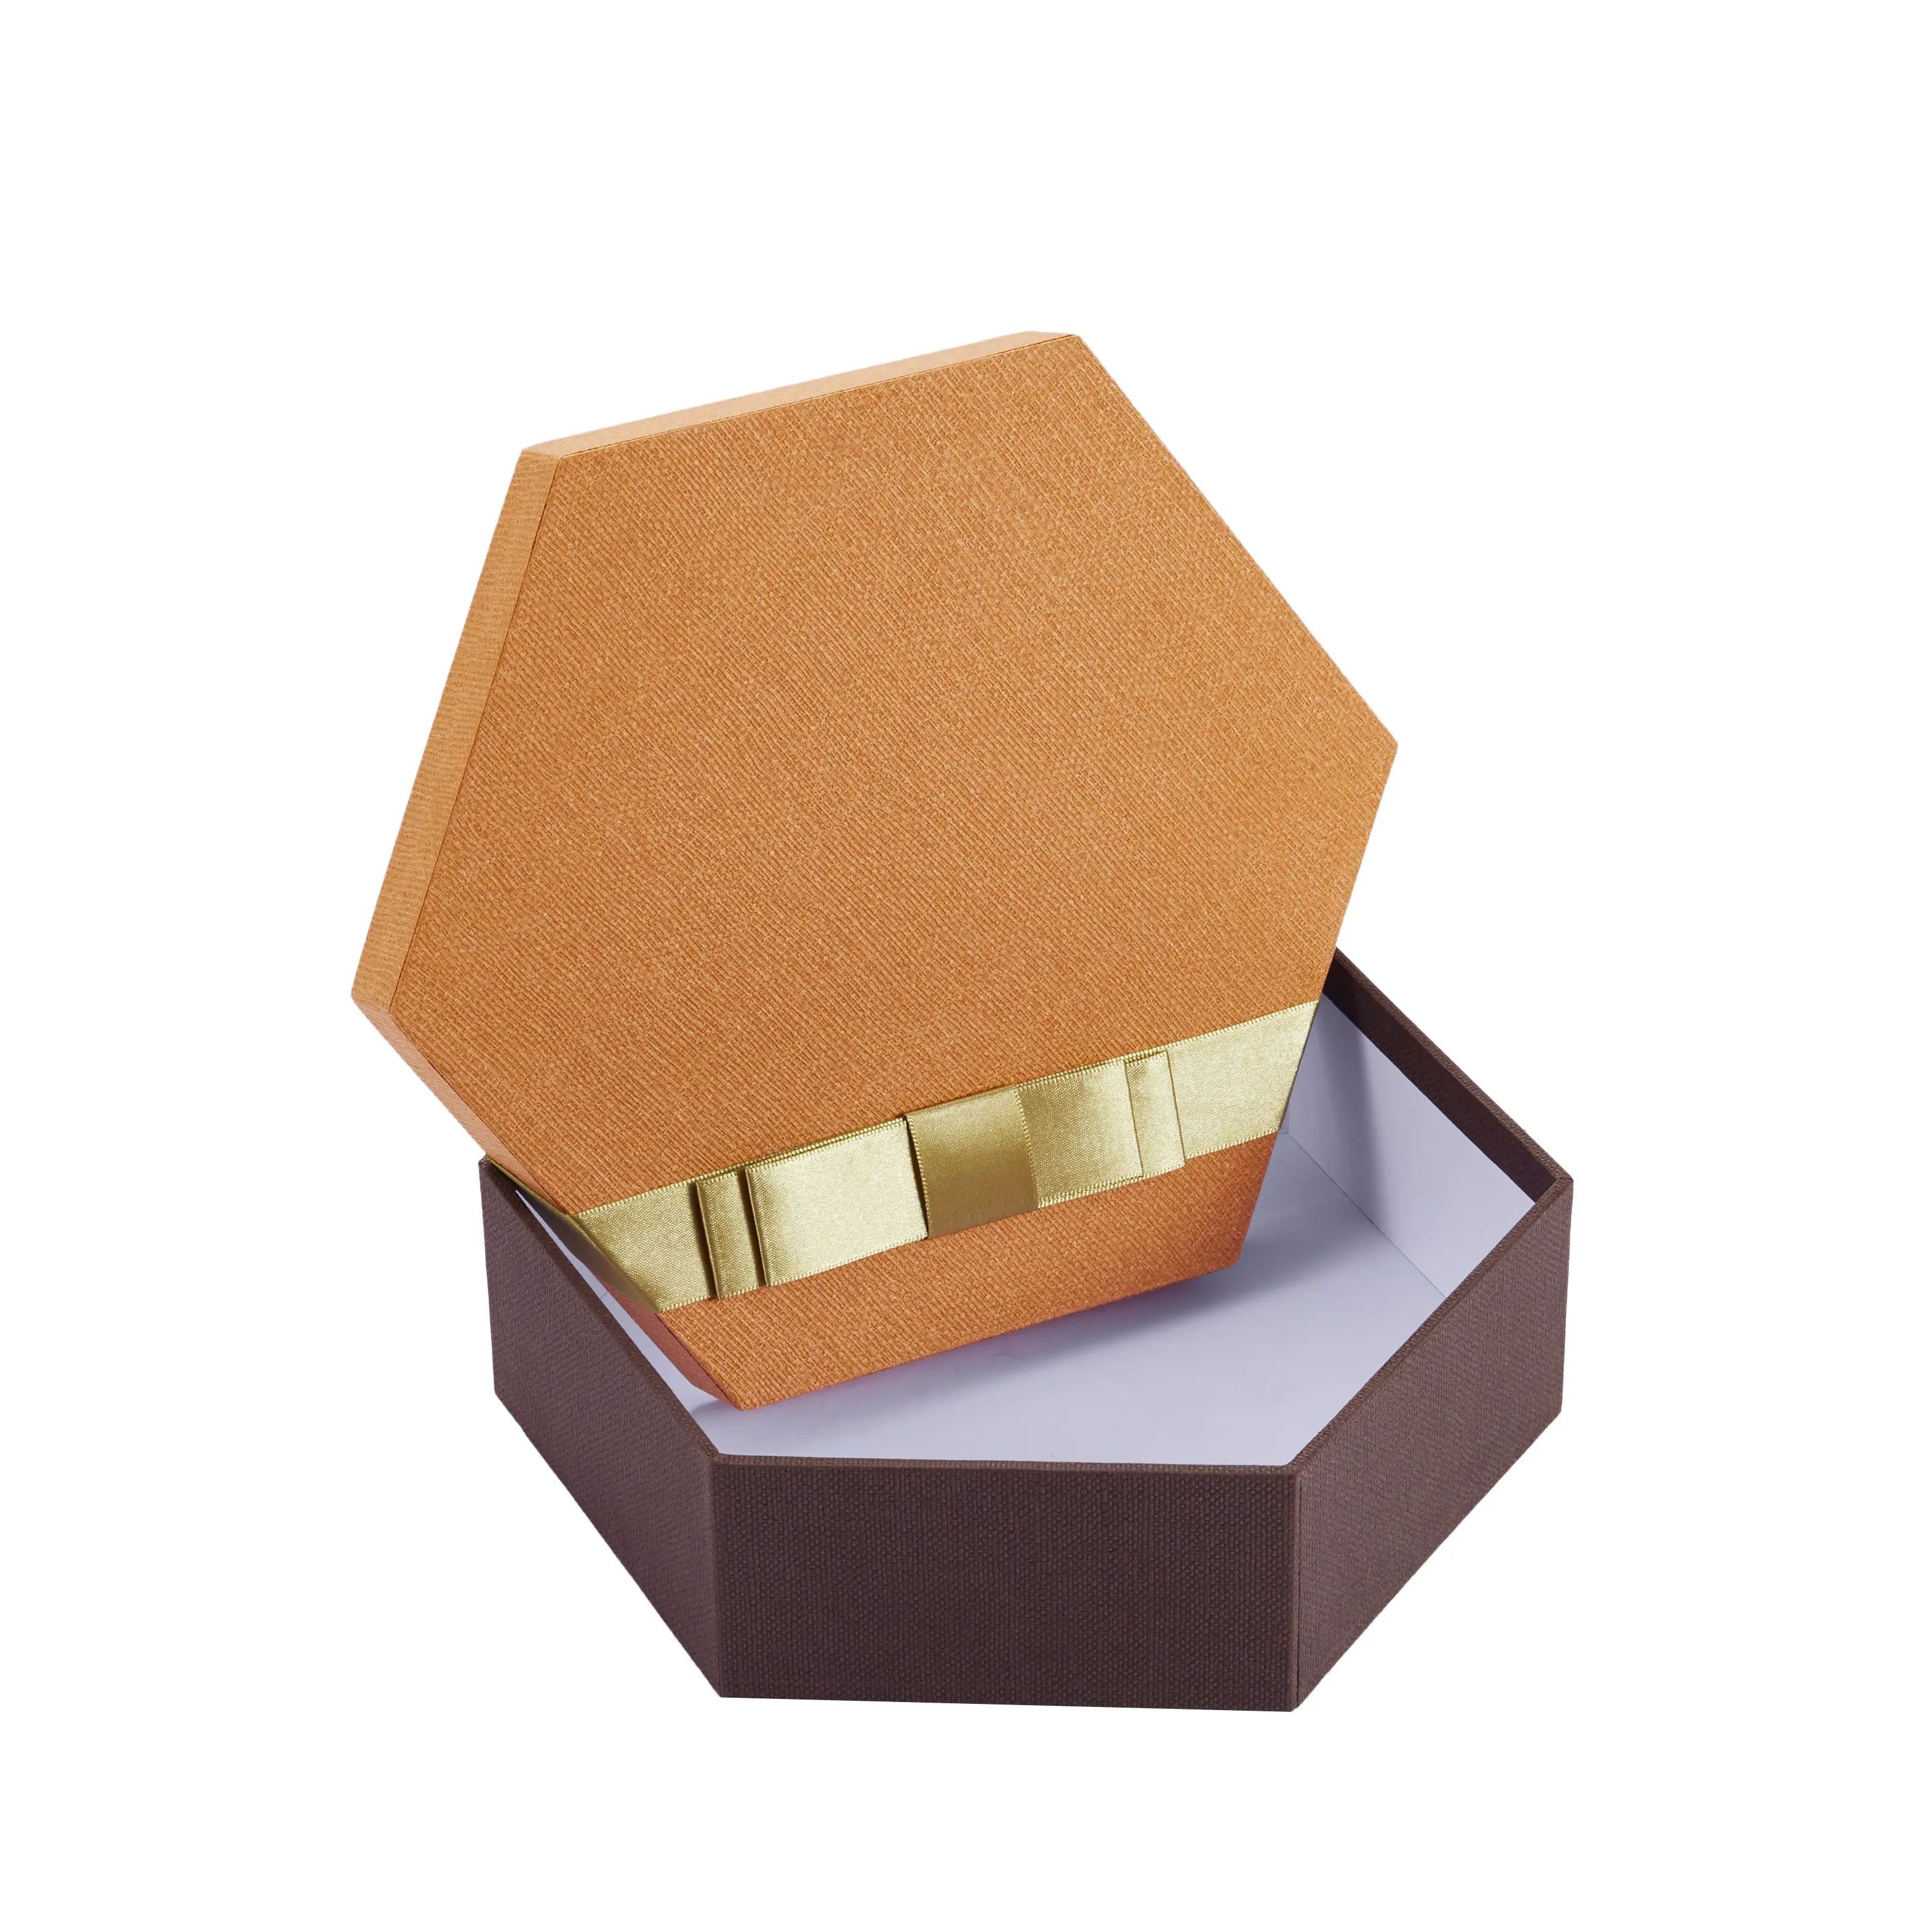 Boîte cadeau papier rigide hexagone en carton, emballage personnalisée de qualité alimentaire, boîtes en baklave pour collations, 50 pièces